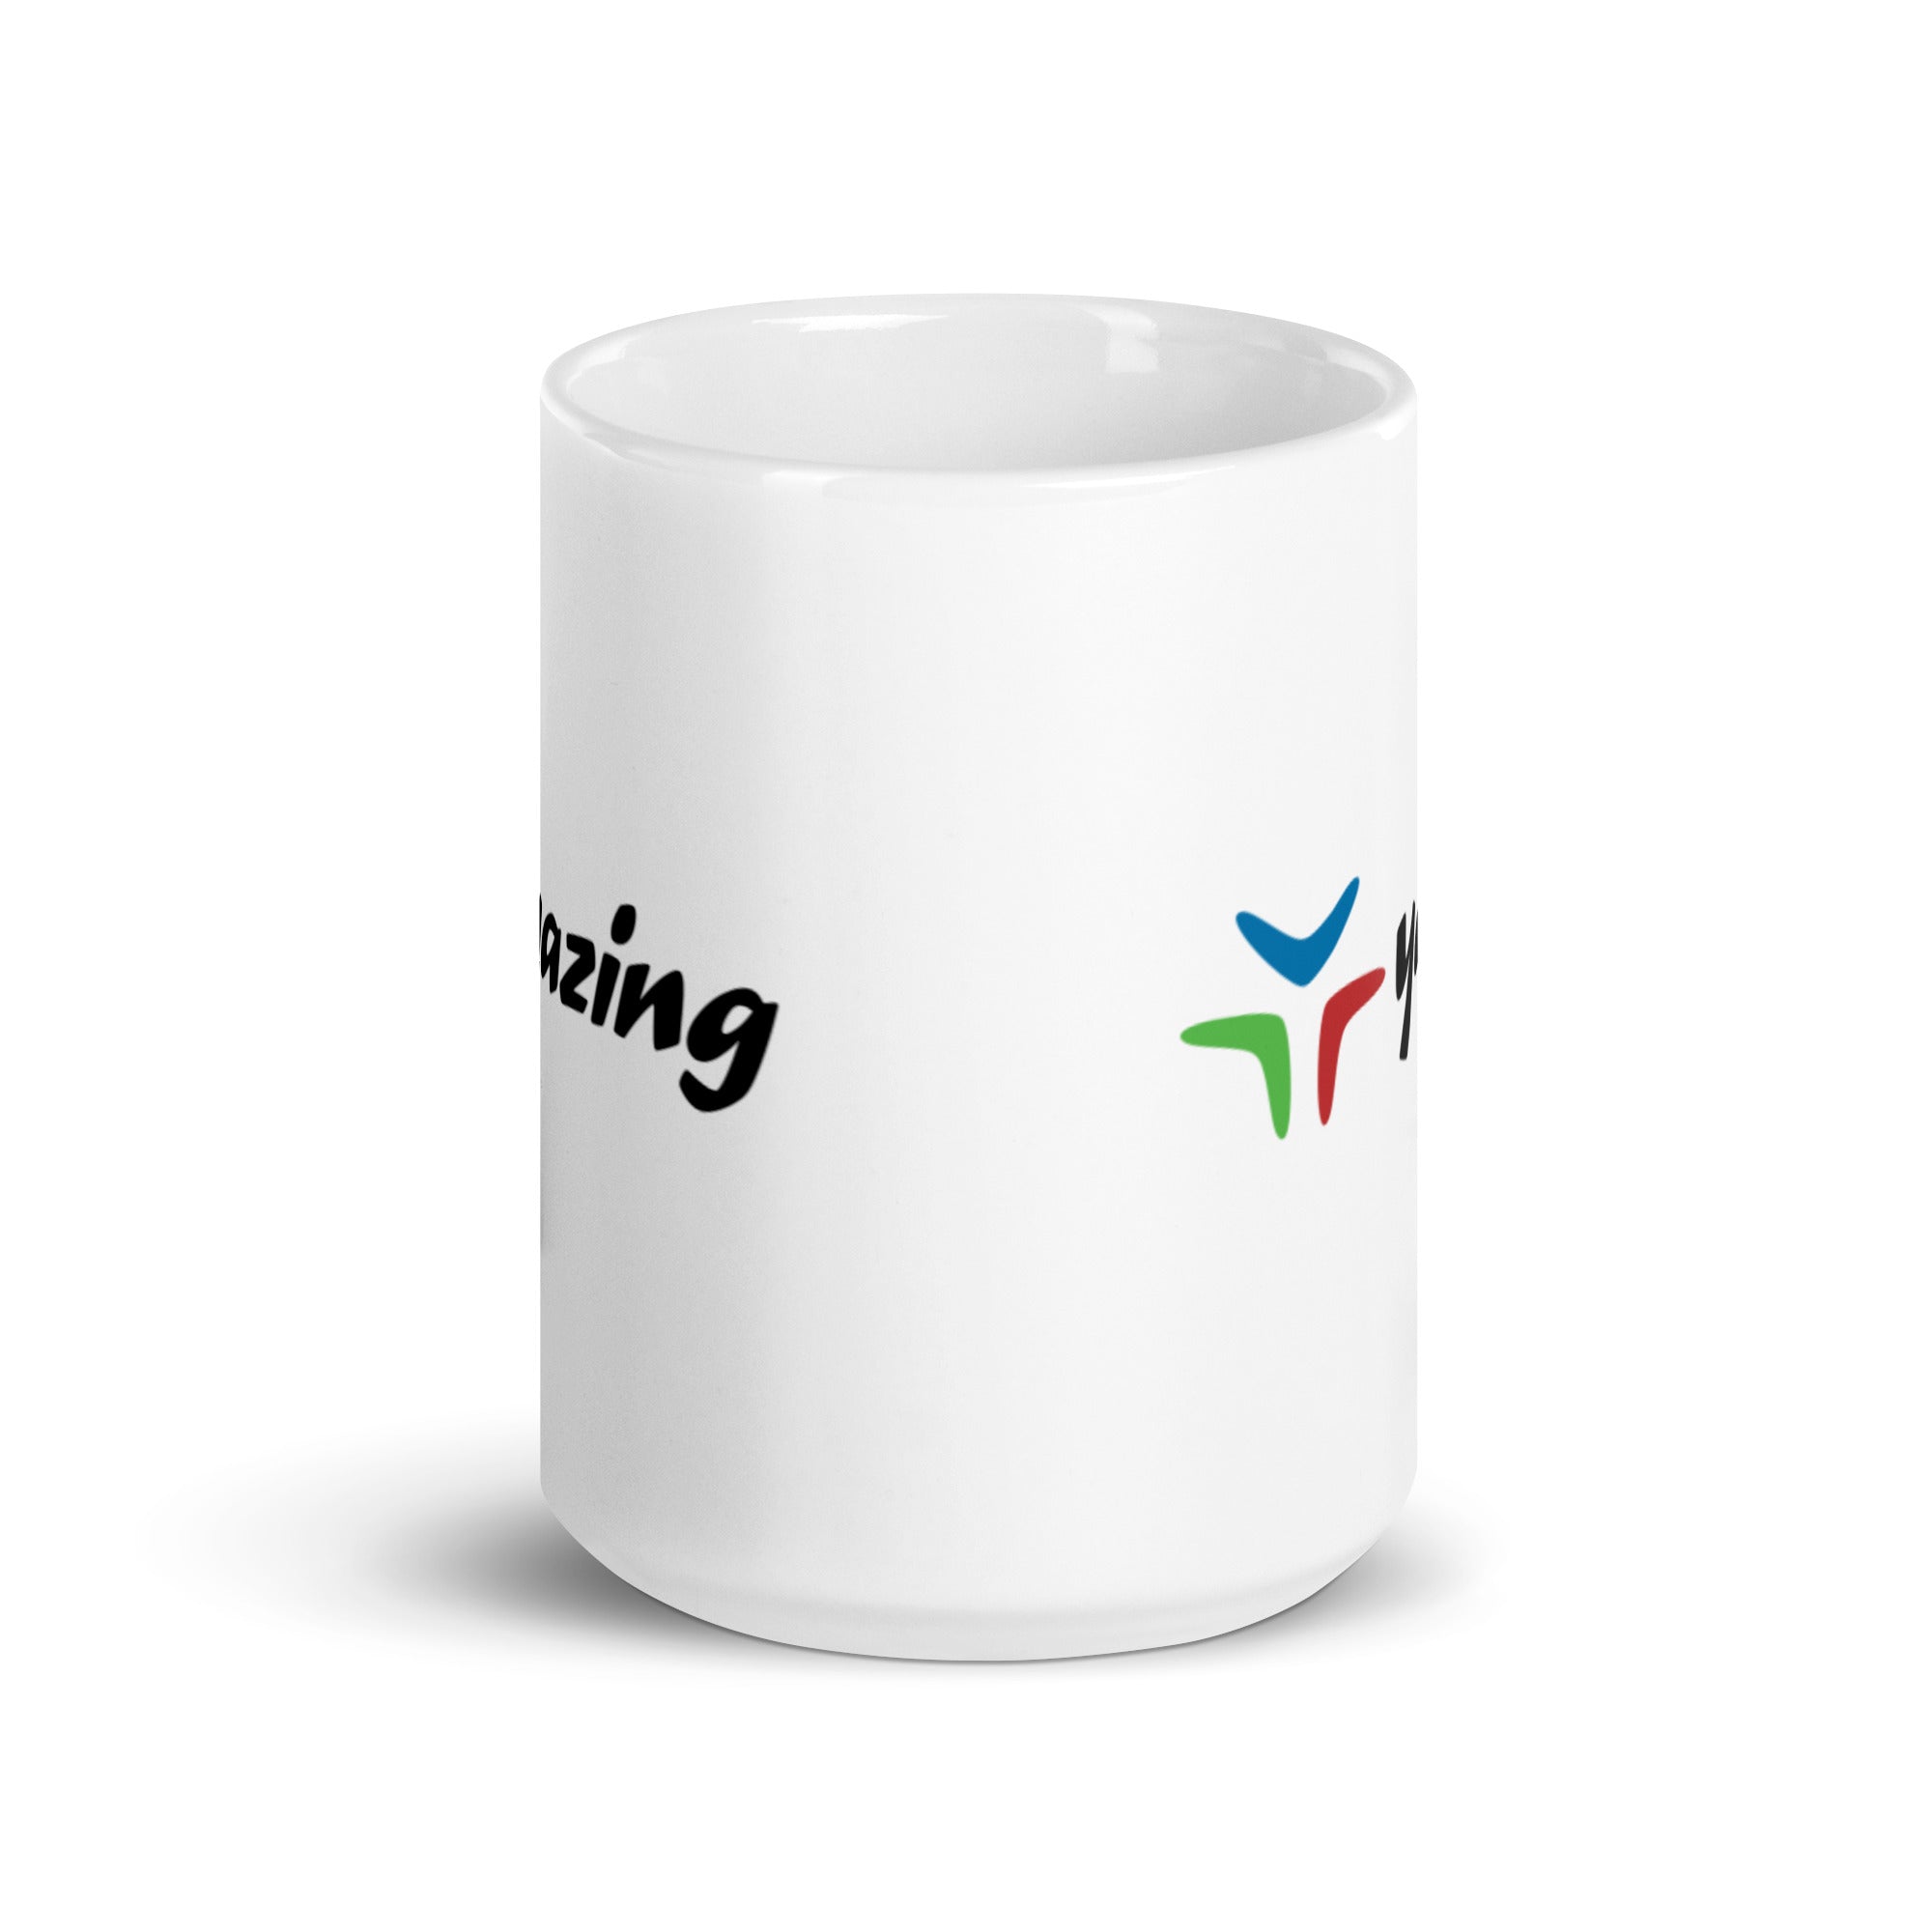 Yazing White glossy mug